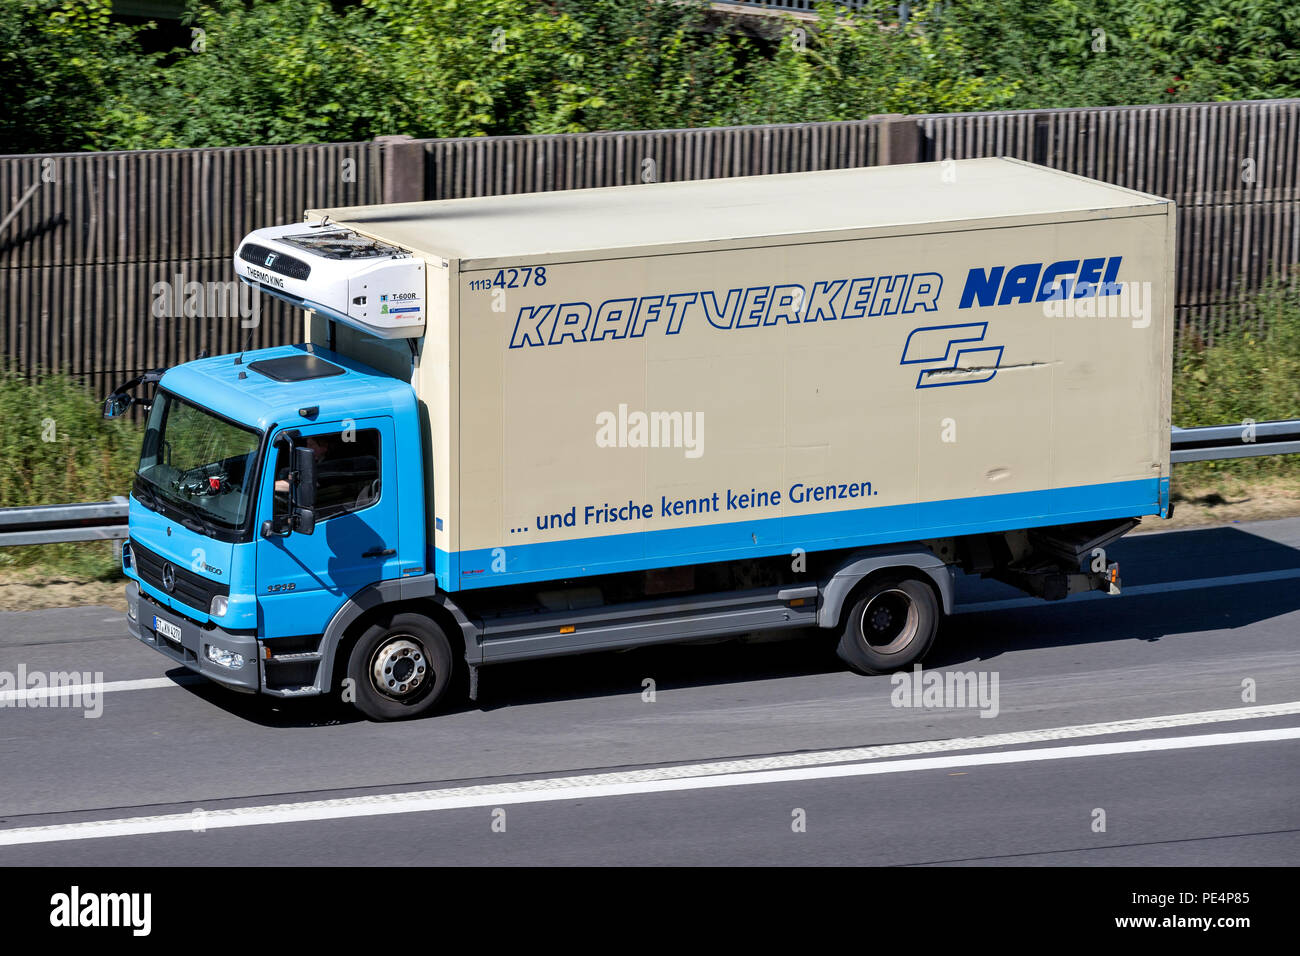 Nagel-Group carrello su autostrada. Nagel-Group è una logistica tedesca, specializzata nella logistica alimentare, con circa 100 filiali in 16 paesi. Foto Stock